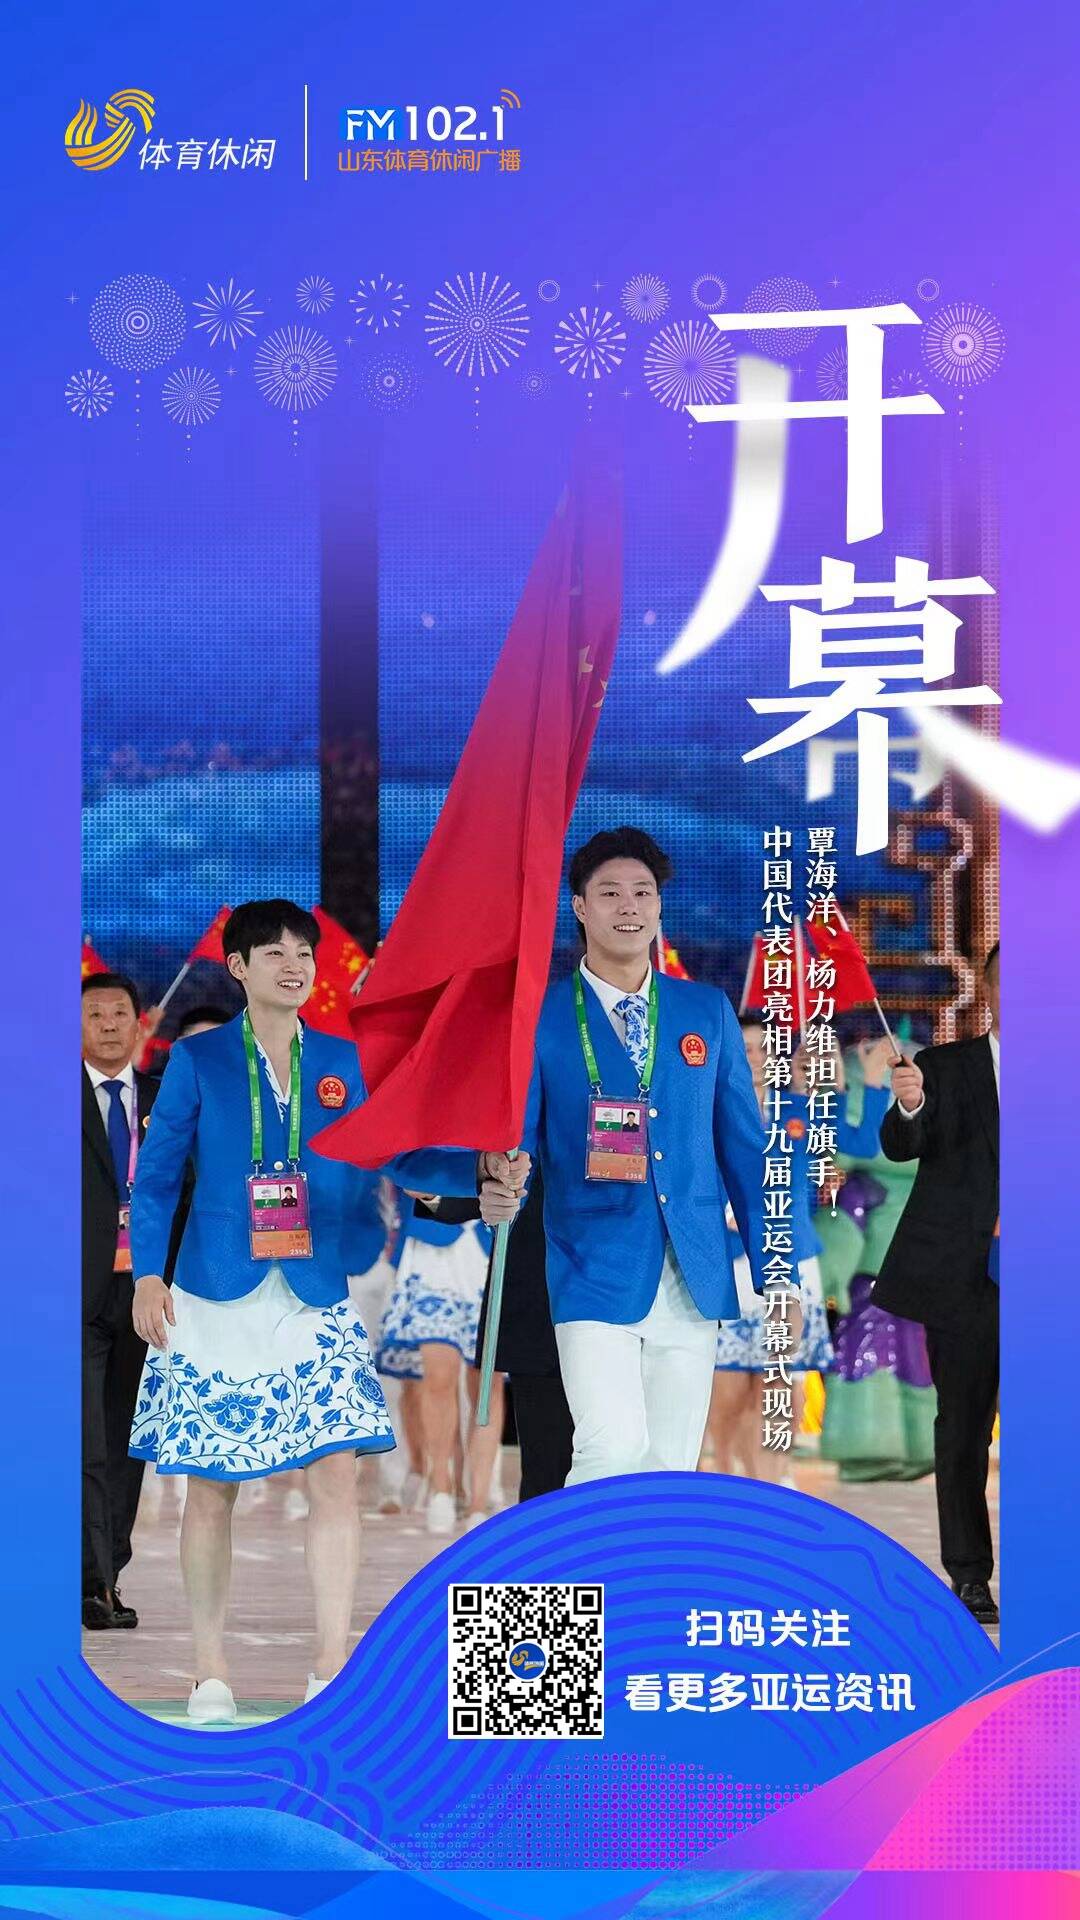 一起看亚运丨杭州亚运会开幕式，覃海洋、杨力维举旗带领中国队入场